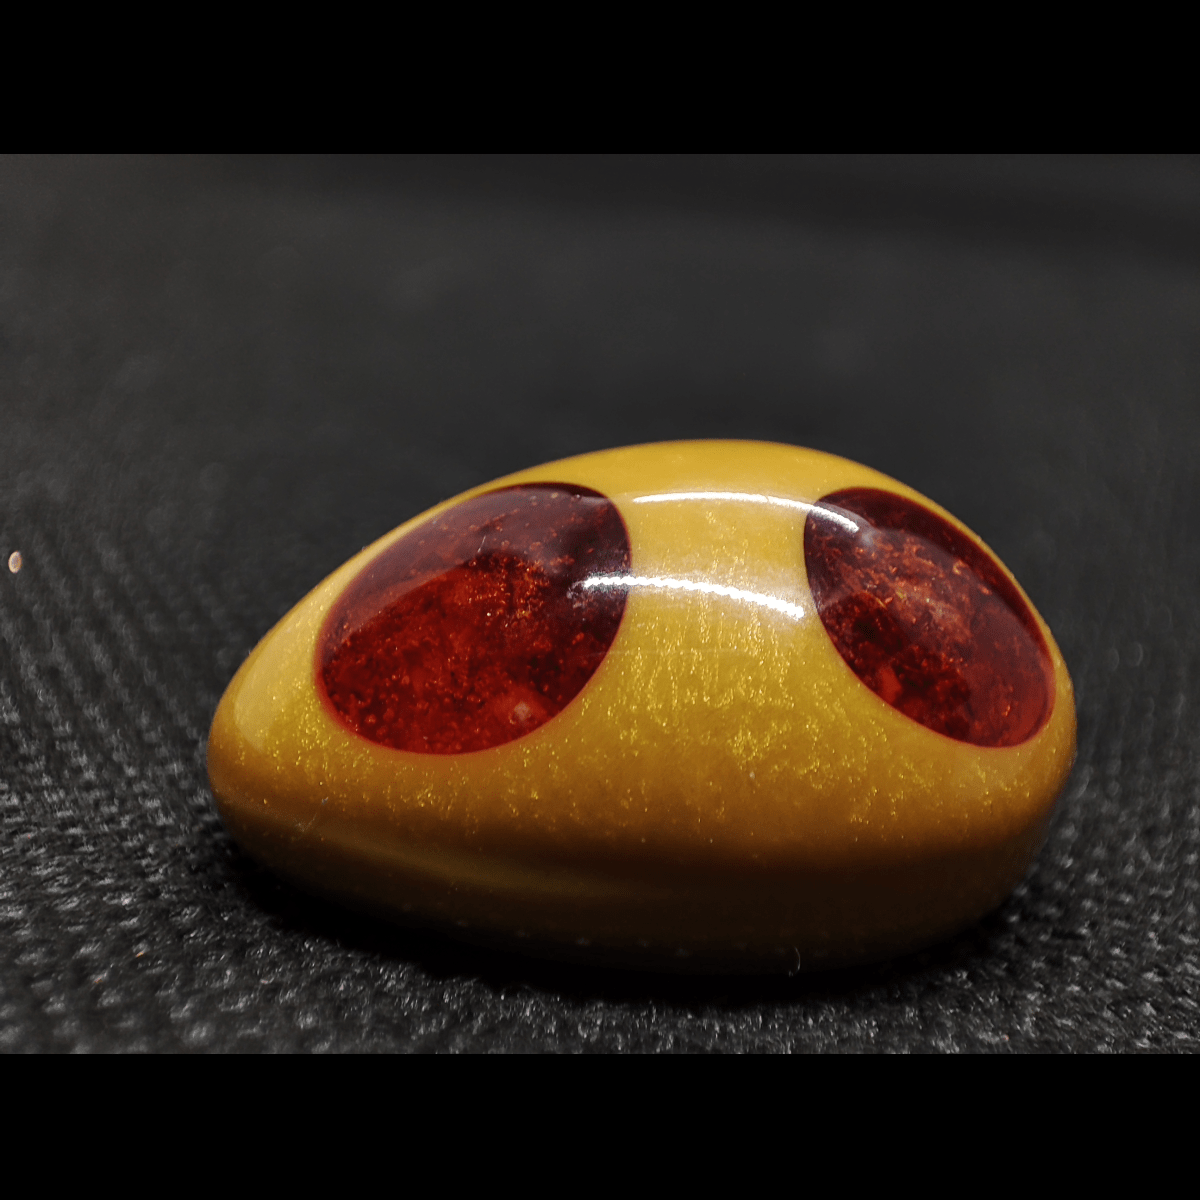 Makro Aufnahme eines goldenen Schmuckstückes mit orangenen Edelsteinpunkten. Es handelt sich dabei um das Orgonit Schmuckstück "Das goldene Ei".